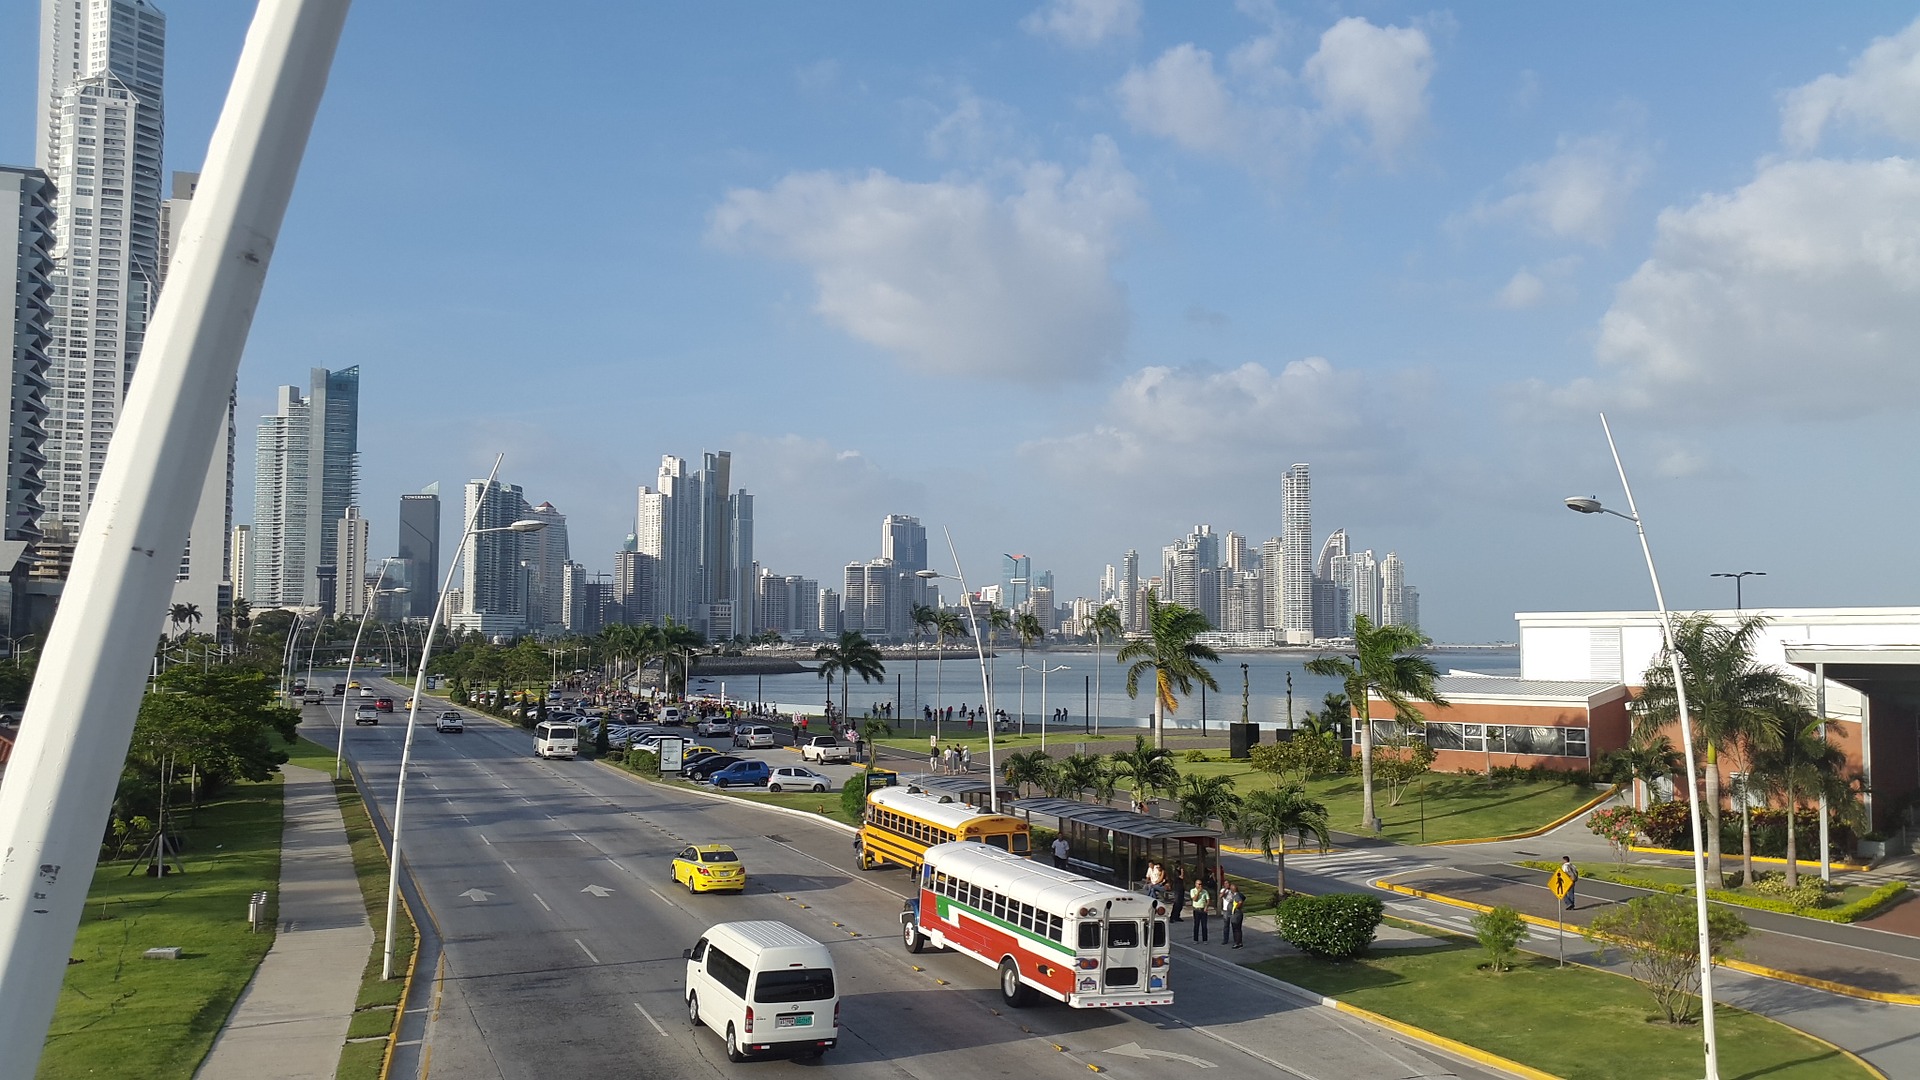 Panama City 12 Tage Urlaub ab 377,36€ Mittelamerika Deal